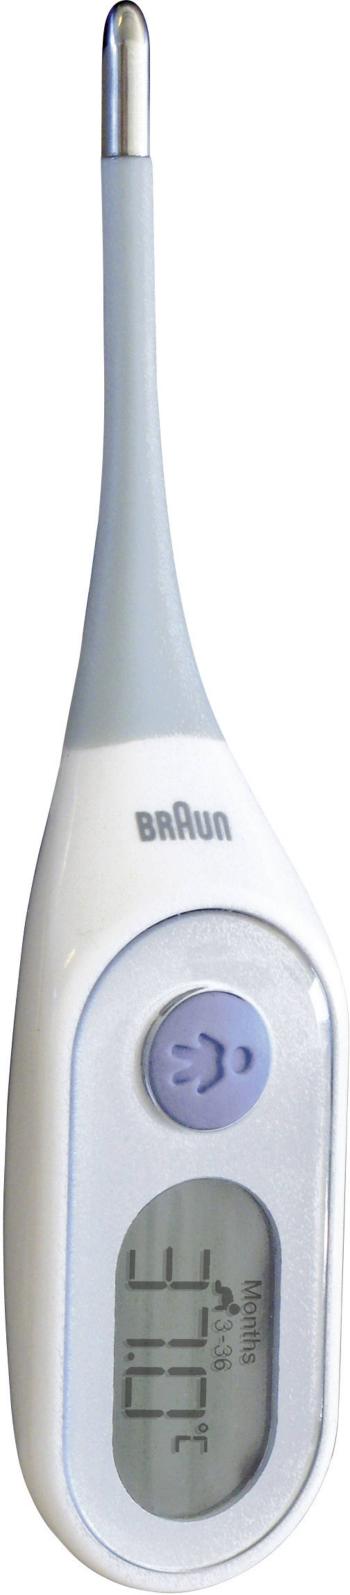 Braun PRT2000 teplomer lekársky s alarmom horúčky